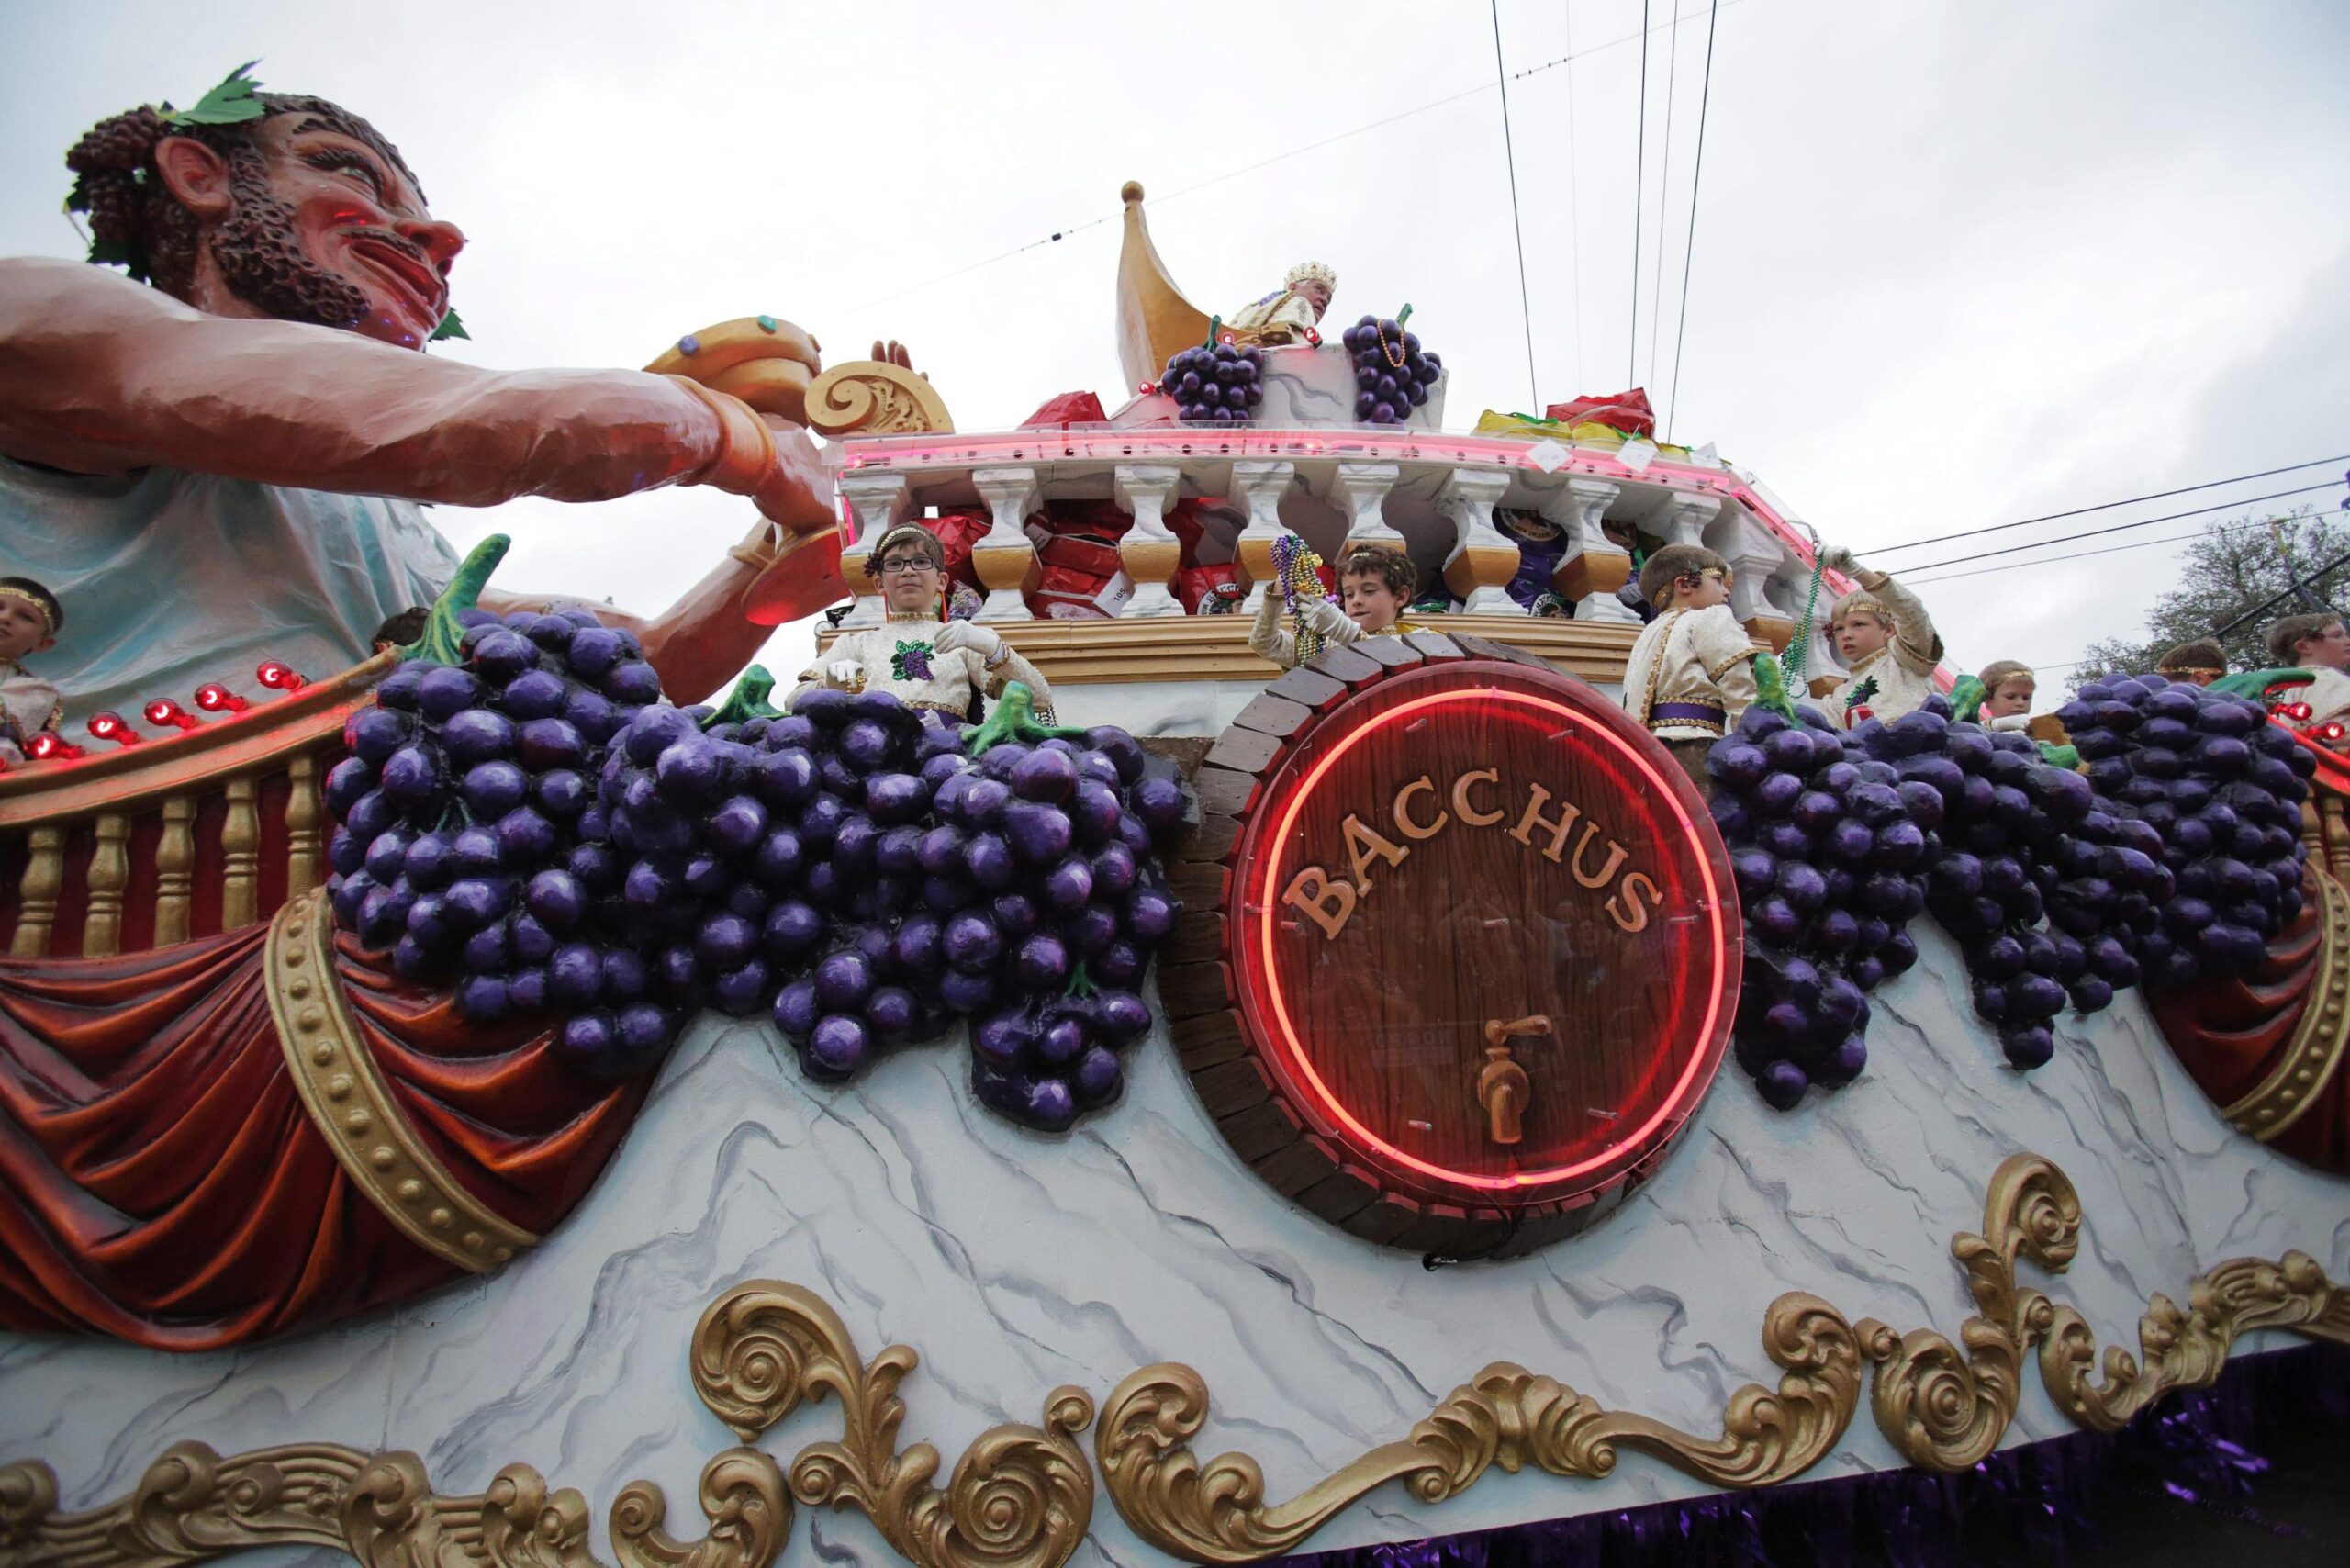 New Orleans, sparatoria non ferma il "Mardi gras" di Carnevale02